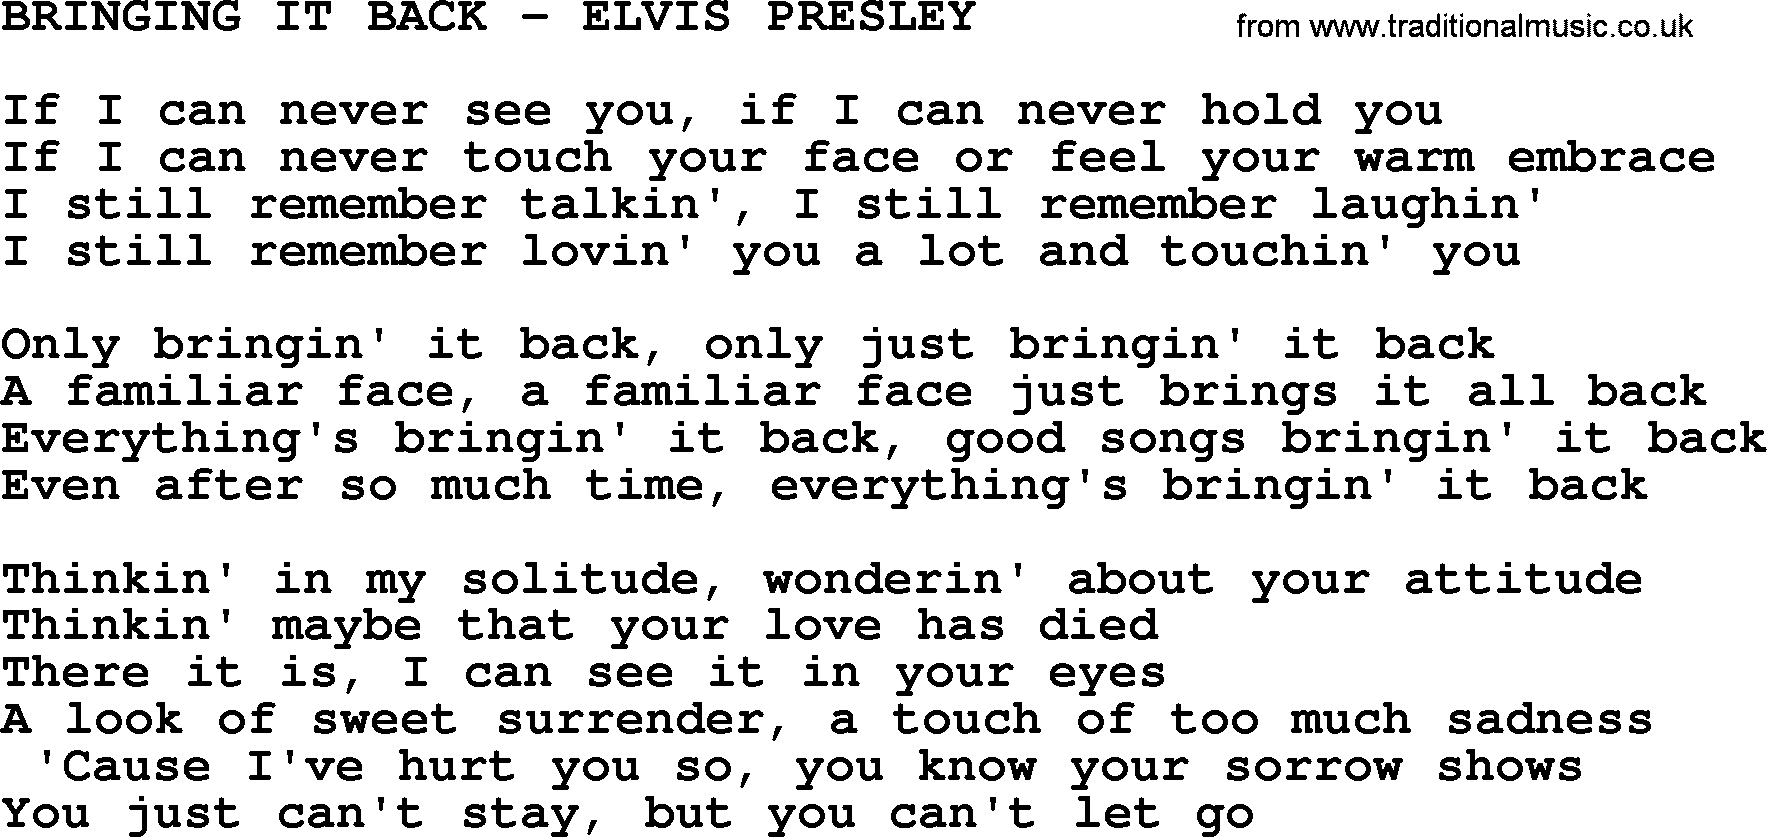 Elvis Presley song: Bringing It Back-Elvis Presley-.txt lyrics and chords